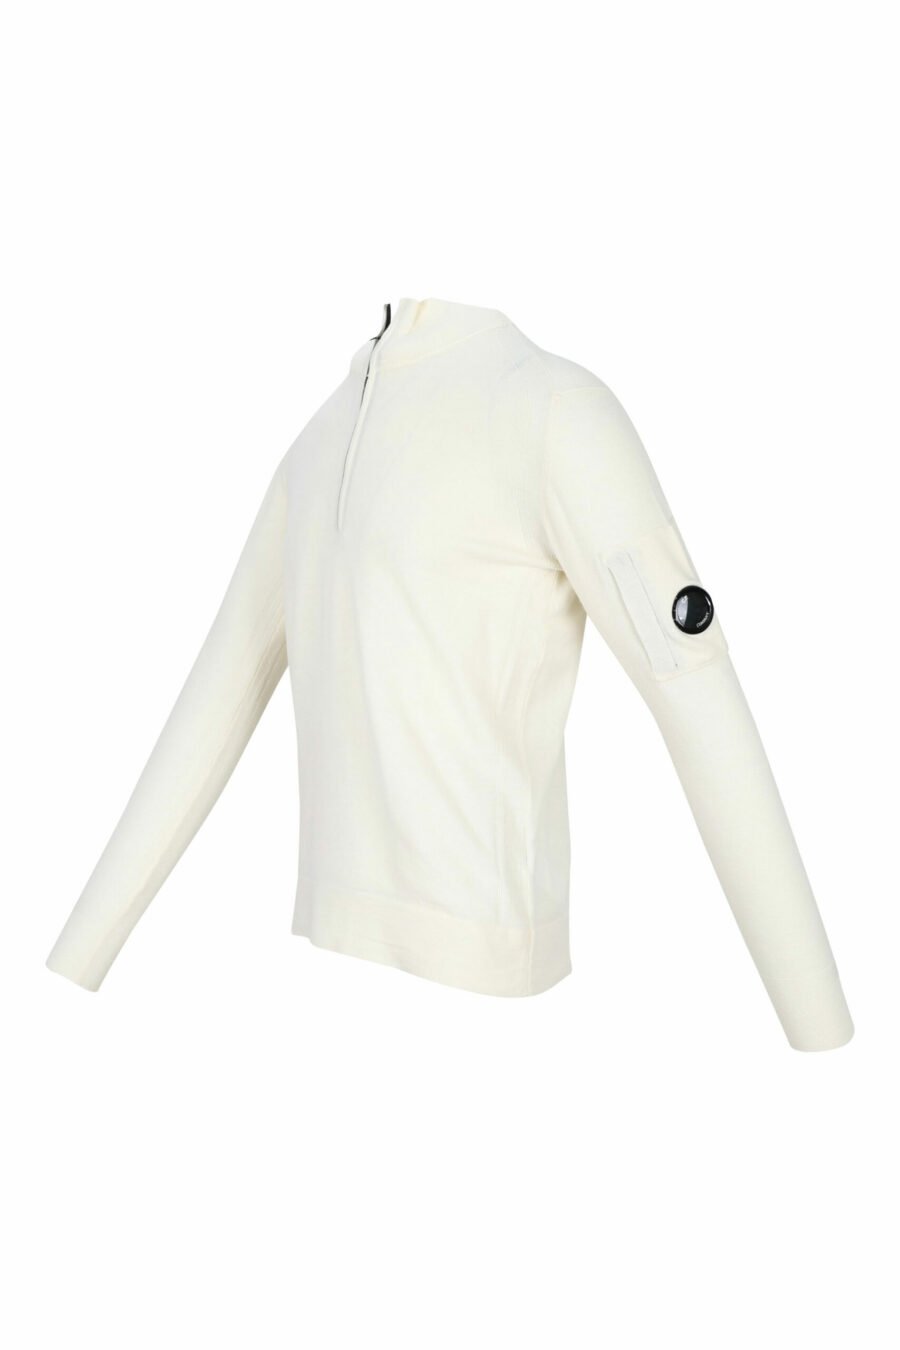 Jersey blanco de cuello alto con cremallera y logo lente lateral - 7620943601213 1 scaled